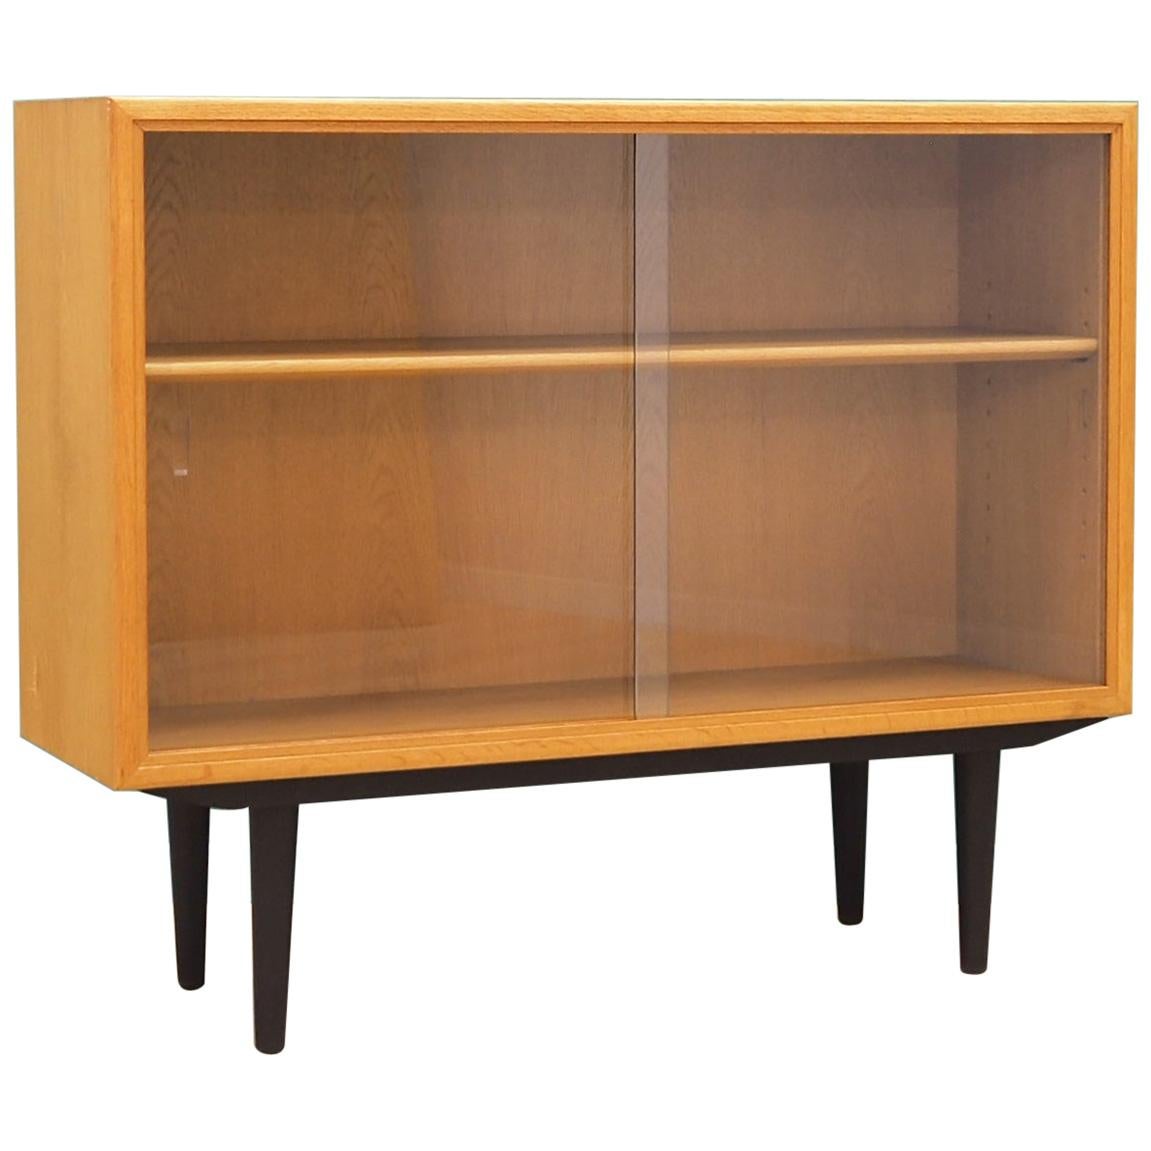  Bookcase Oak, Danish Design, 1960s, Producer Søborg, Designer Mogensen For Sale